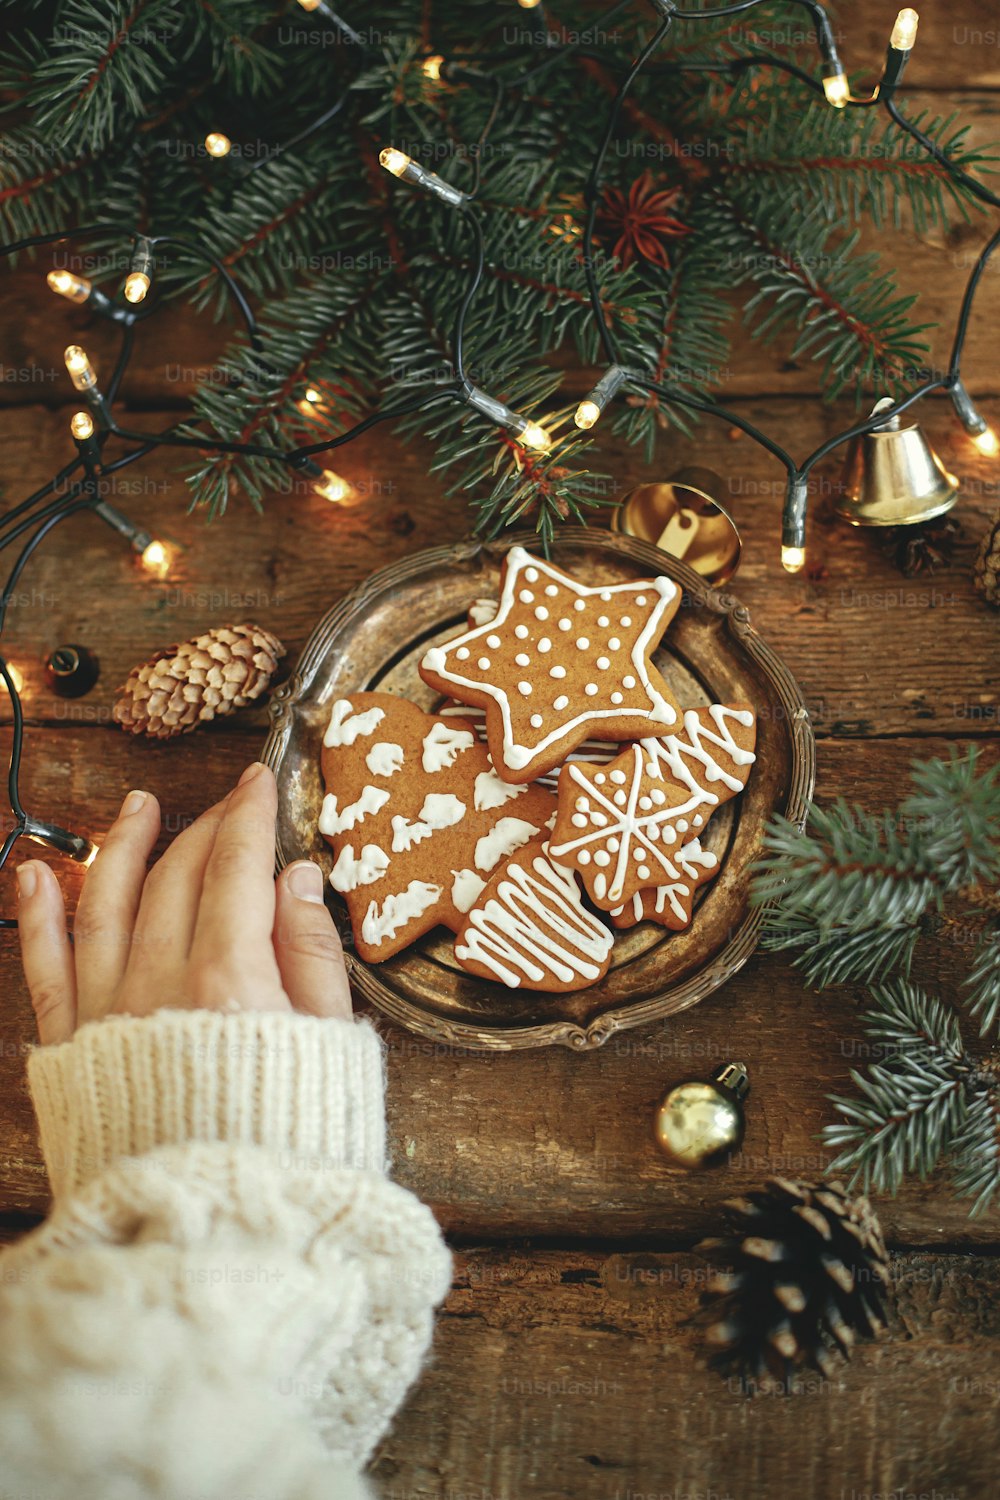 Assiette de maintien à la main avec biscuits en pain d’épice de Noël, branches de sapin, lumières chaudes sur table en bois rustique, pose à plat. Image atmosphérique de l’hiver. Salutations de saisons. Délicieux biscuits faits maison